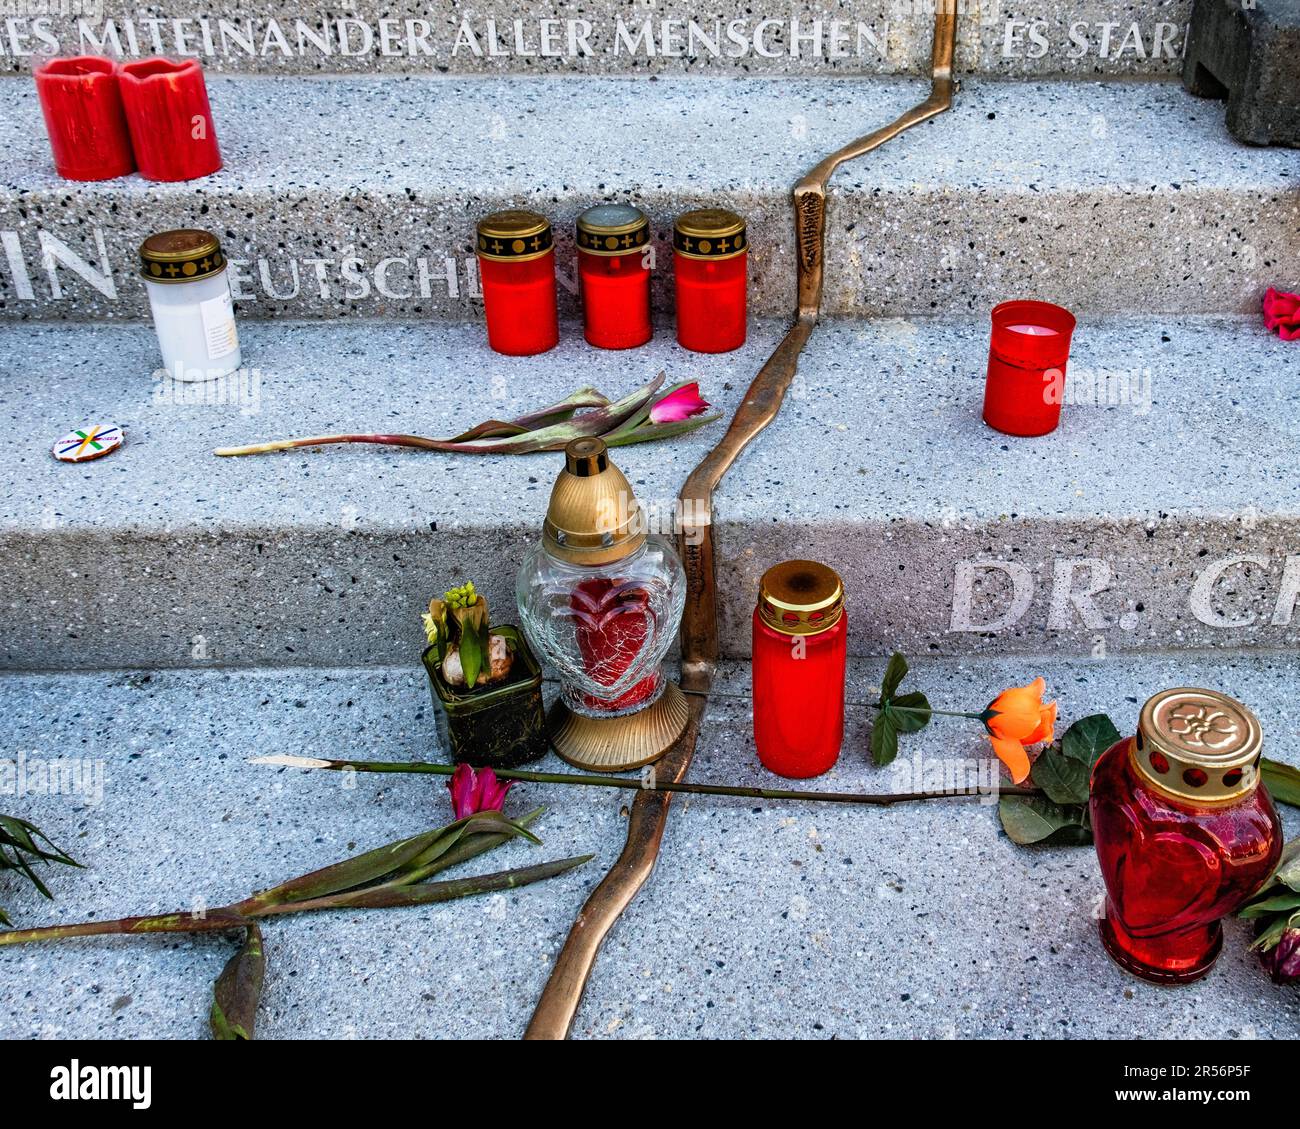 Mémorial, bougies, fleurs pour les victimes d'un attentat terroriste au marché allemand de Noël, Breitscheidplatz, Berlin Banque D'Images